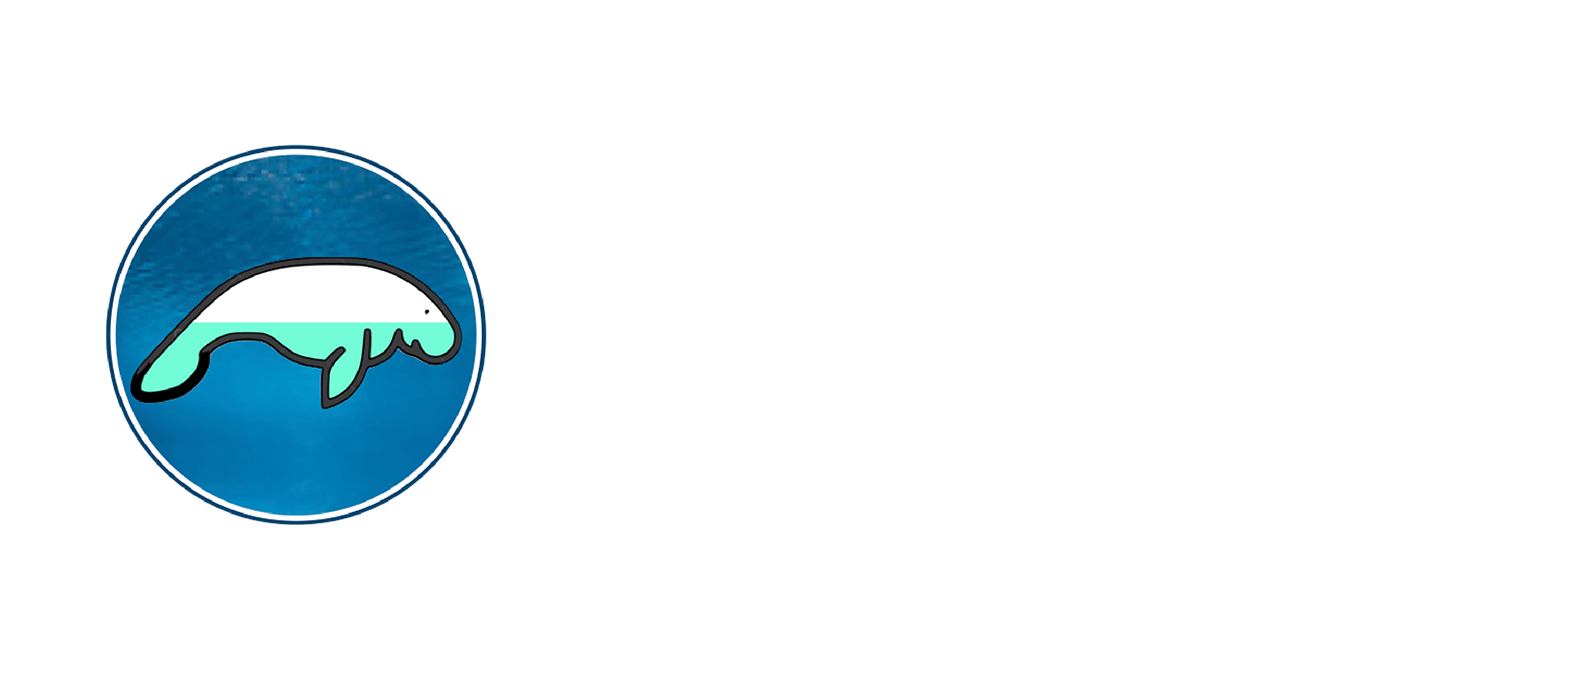 PaddleTail Lodge